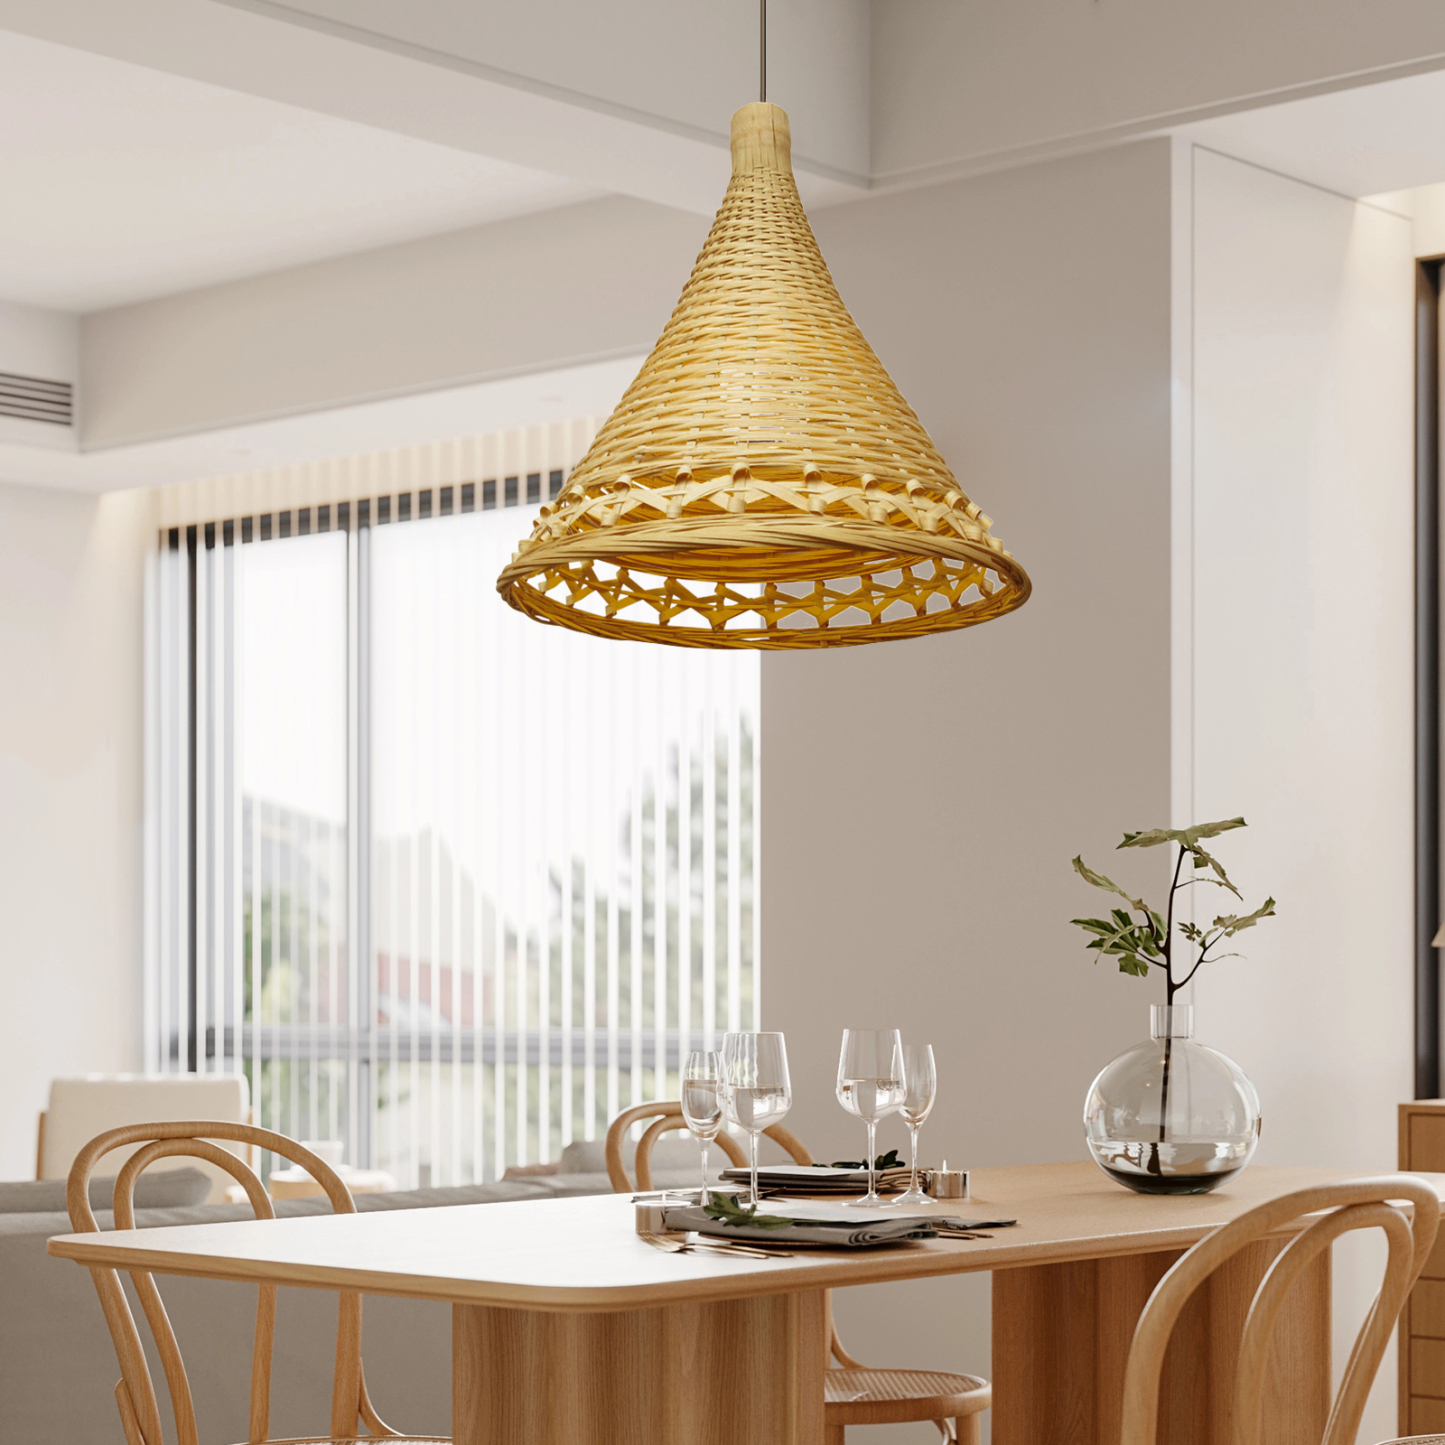 DIY Funnel bamboo pendant light art deco light pendant shade for kitchen